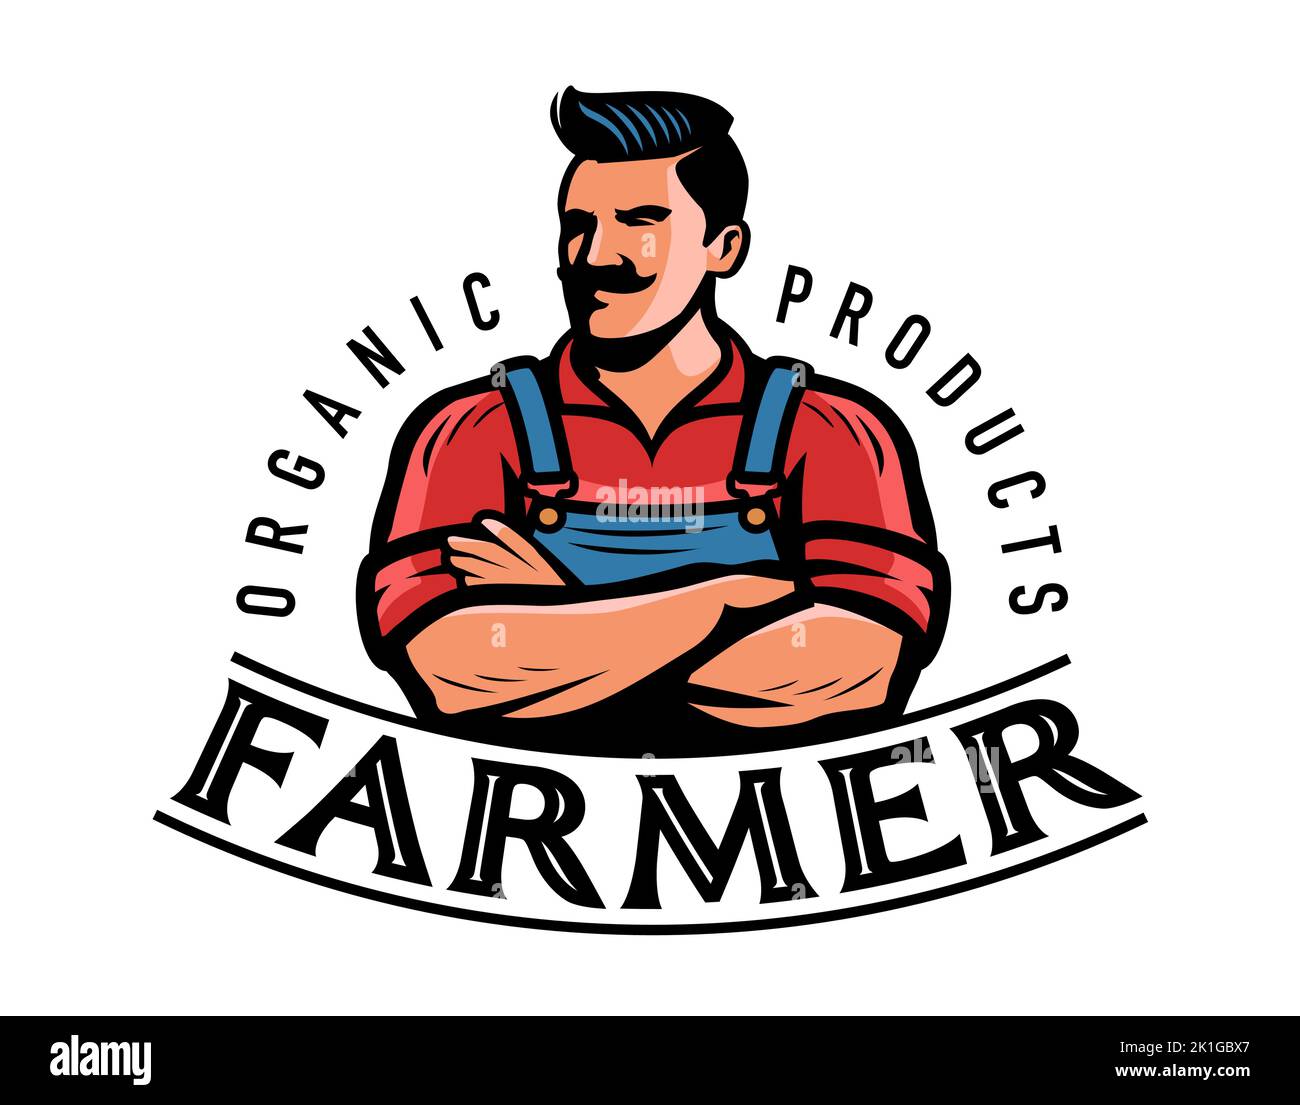 Logotipo o emblema del agricultor. Granja, placa de agricultura. Ilustración vectorial del símbolo de alimentos naturales orgánicos. Ilustración vectorial Ilustración del Vector